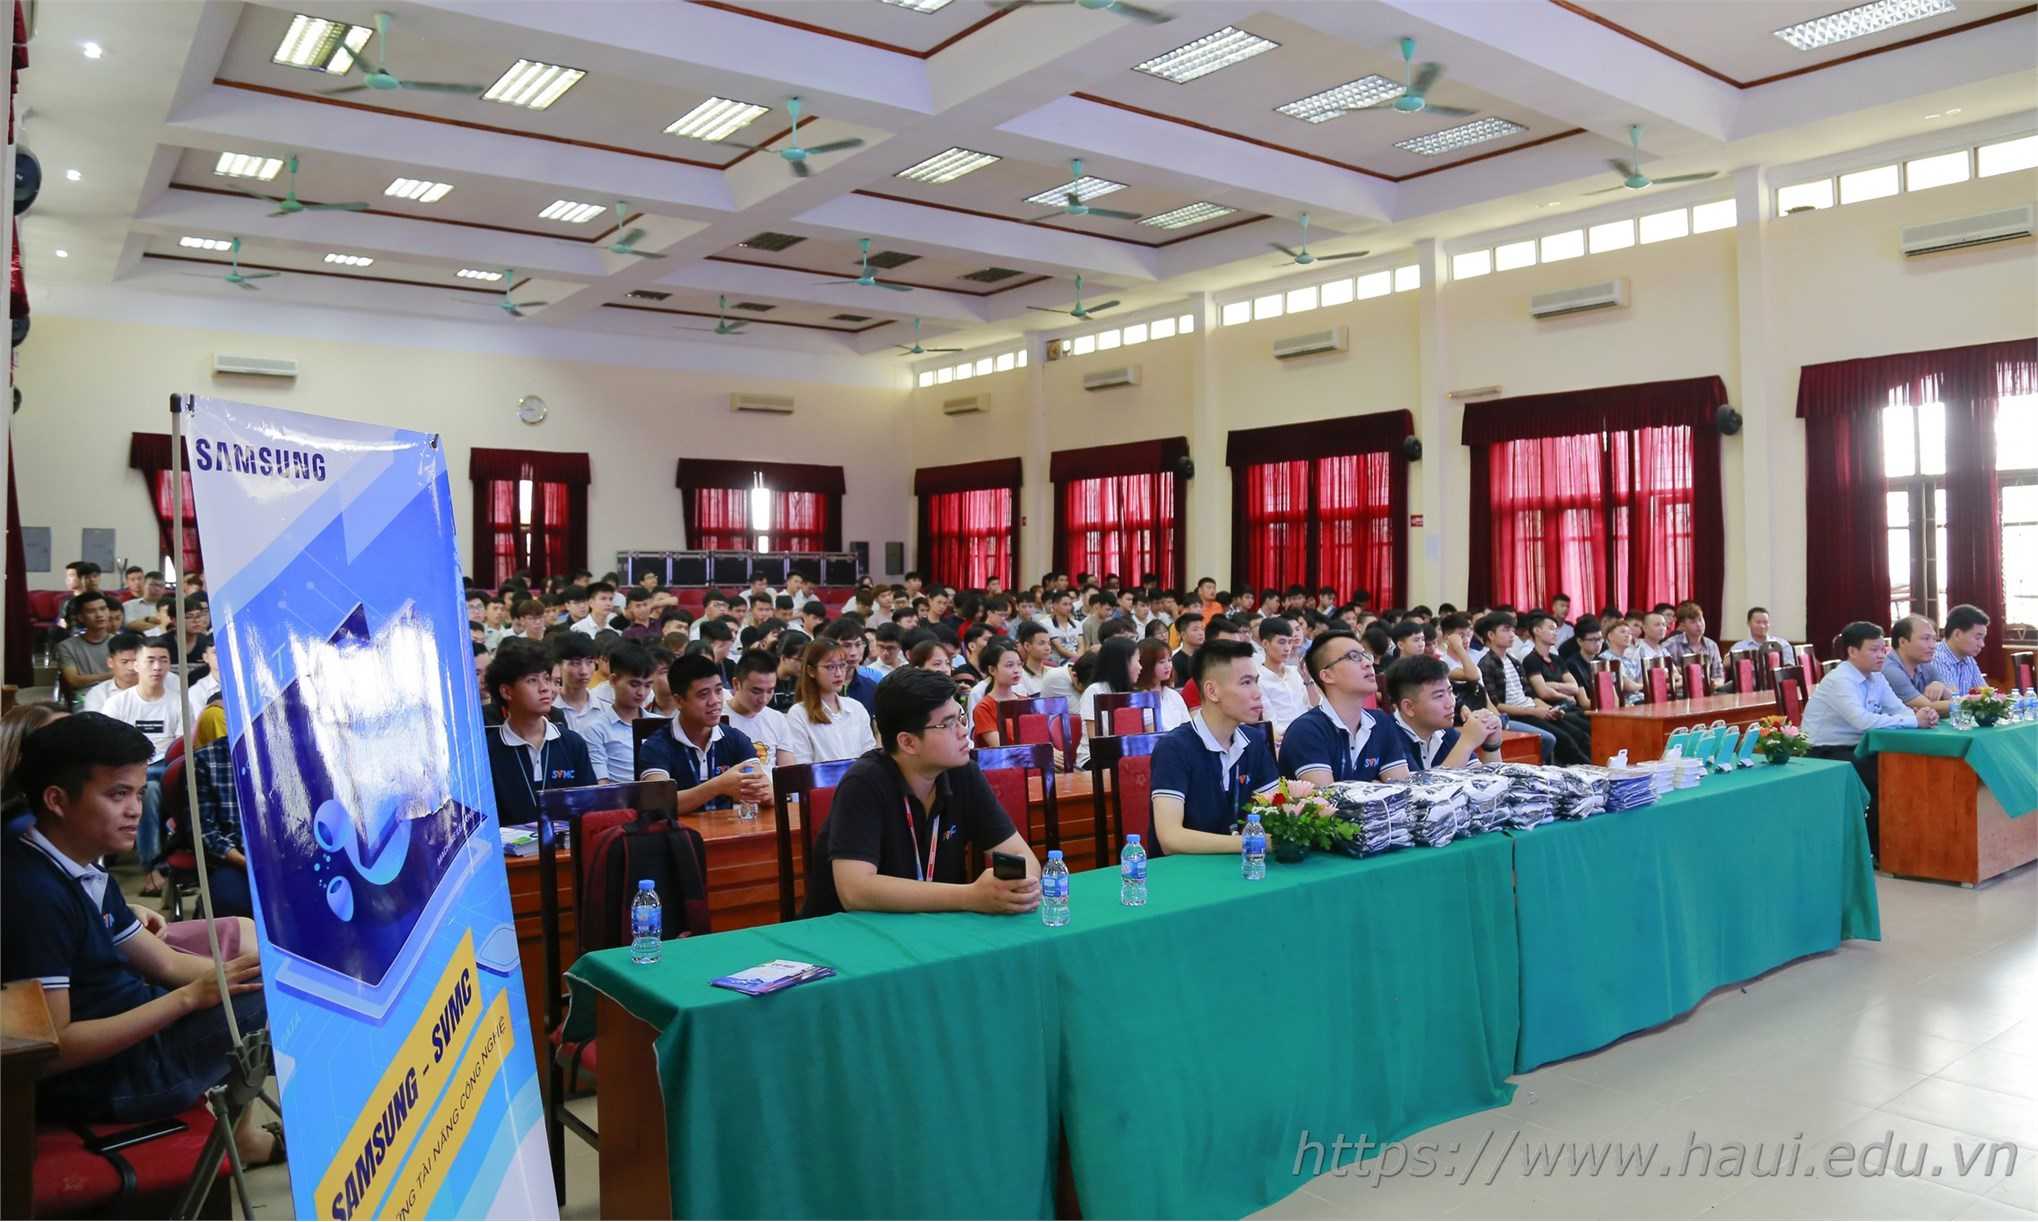 Đại học Công nghiệp Hà Nội tuyển sinh năm 2020